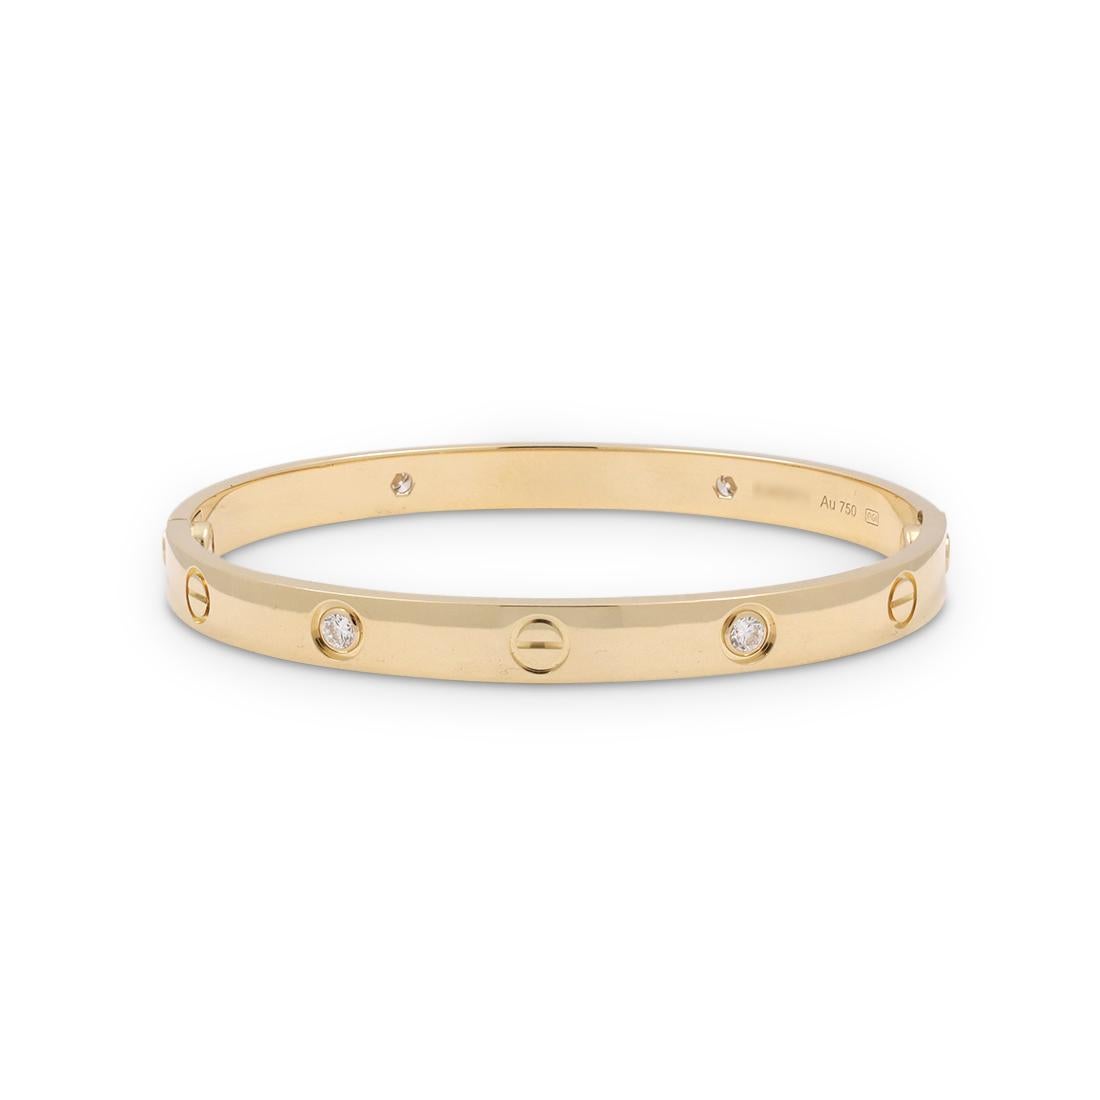 rose gold cartier bracelet